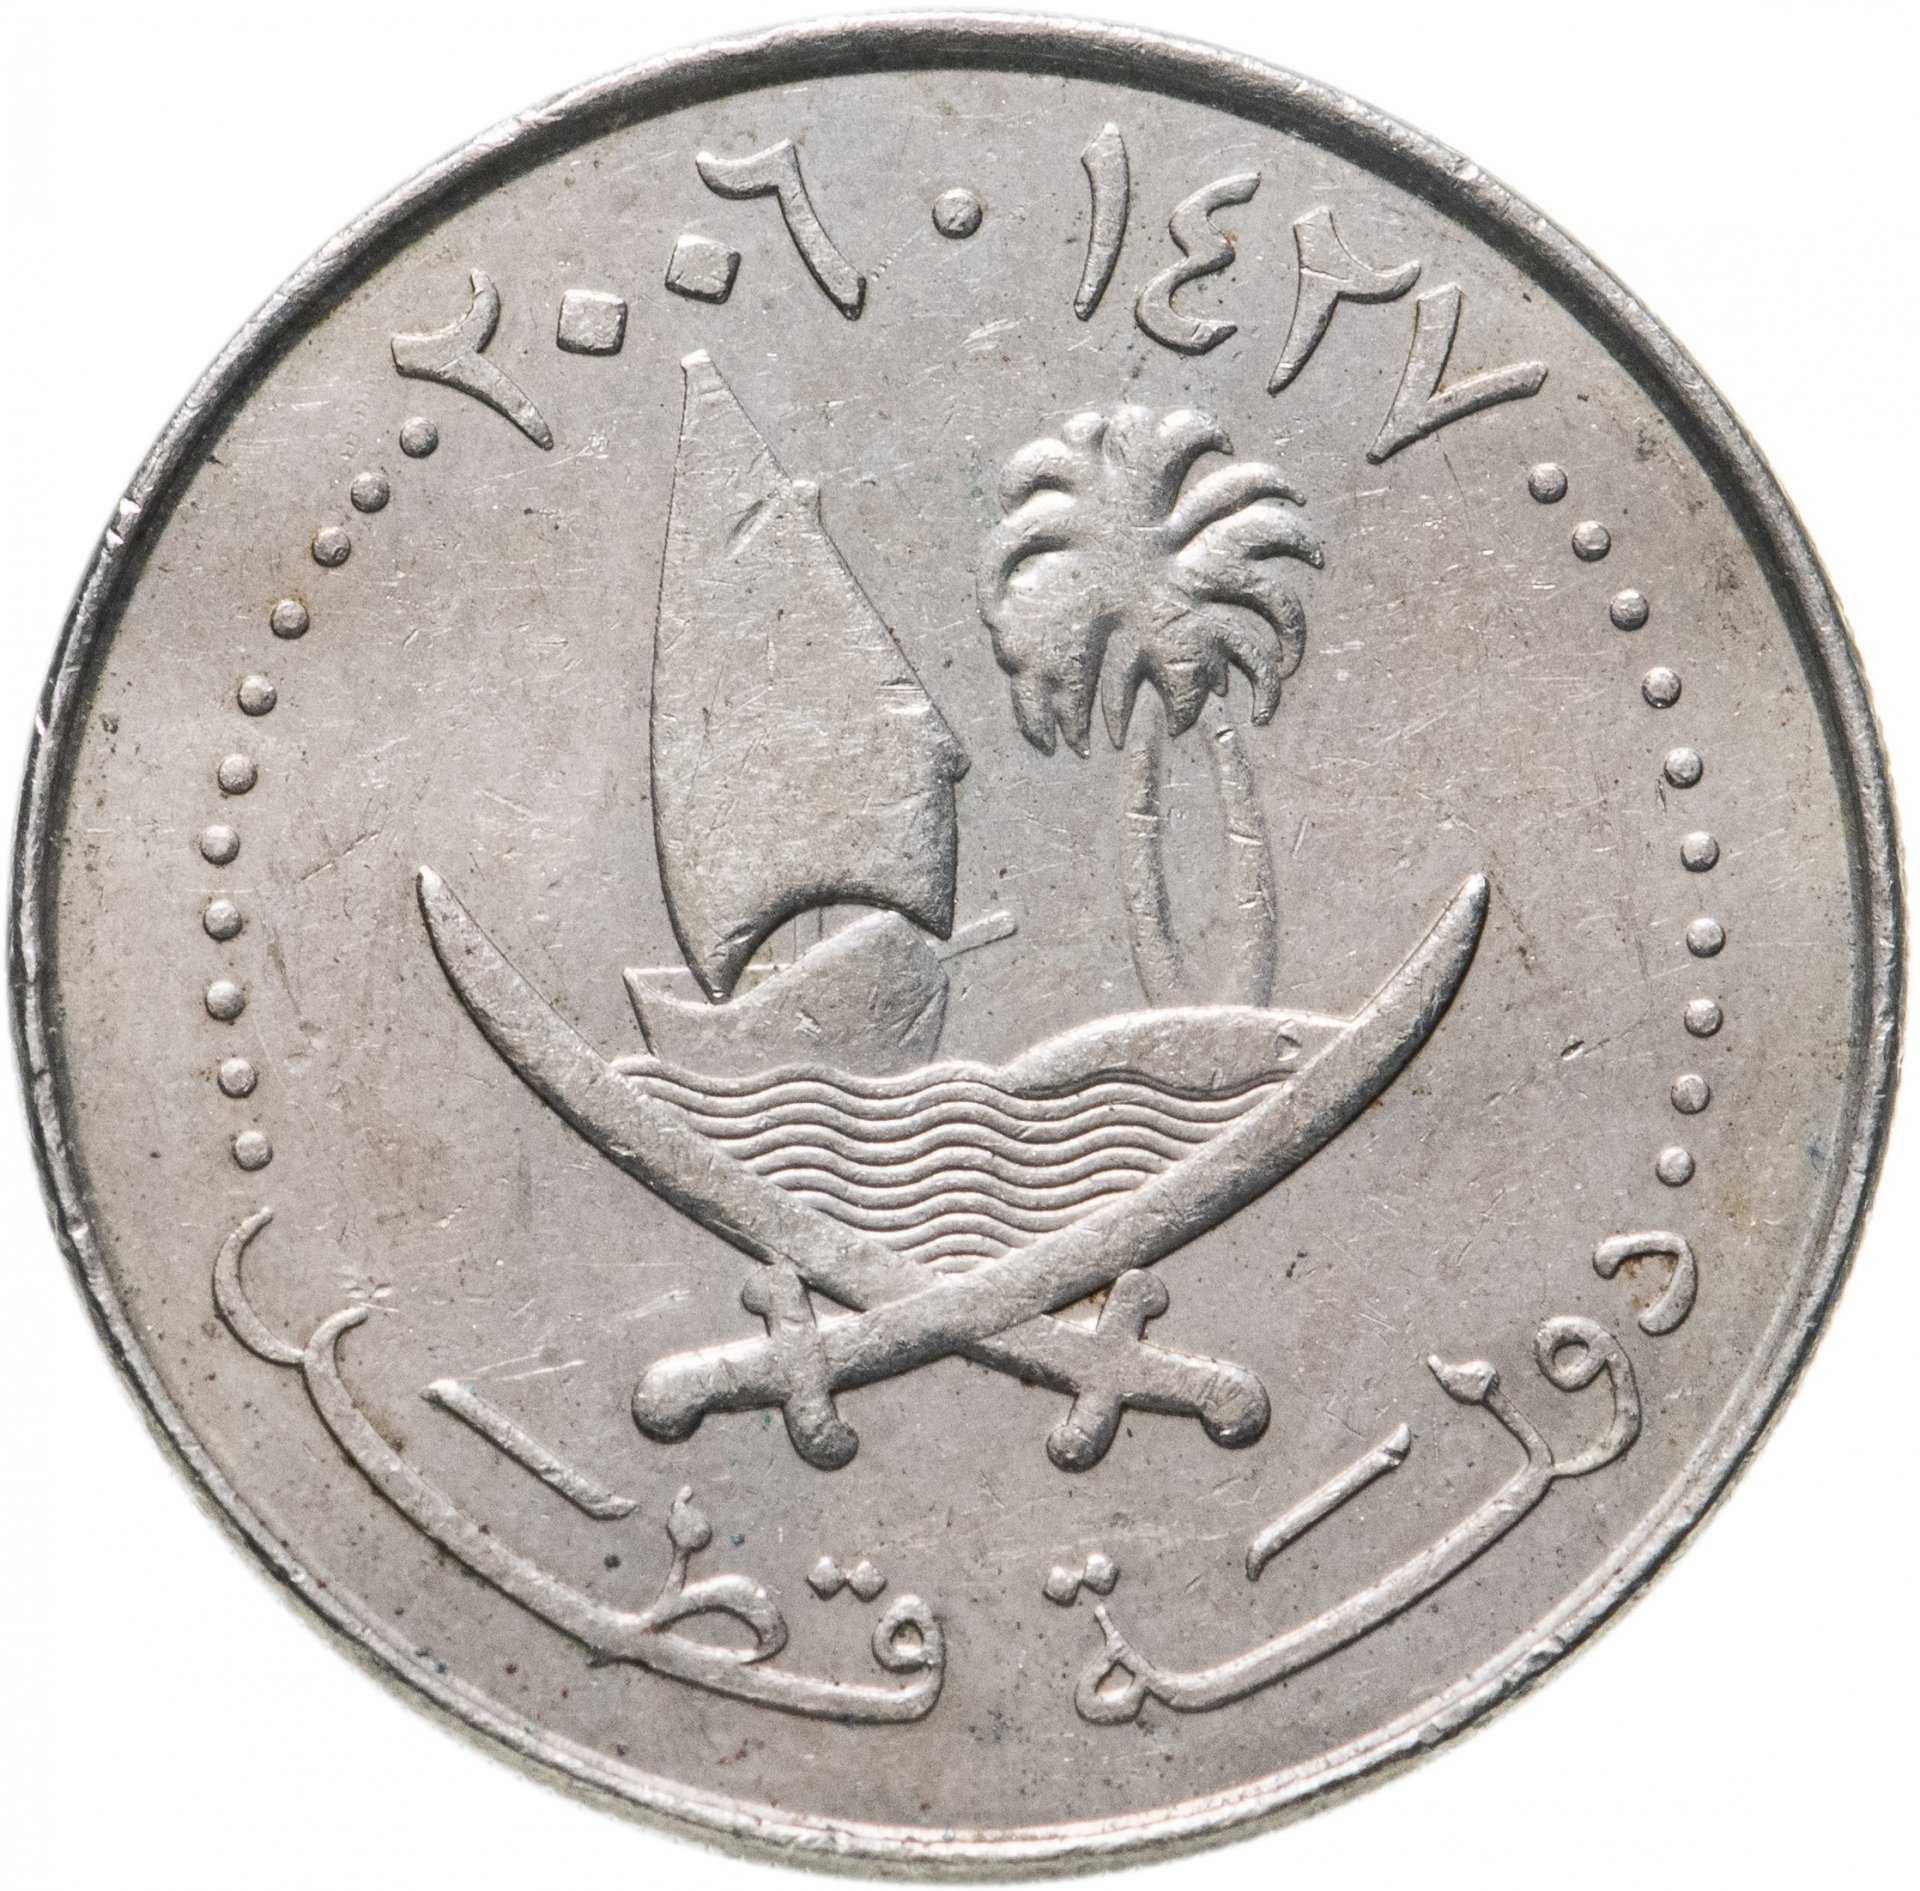 Монеты Катара. Монета Катар 2 дирхама. Дирхамы монеты. Дирхам символ. 9000 дирхам